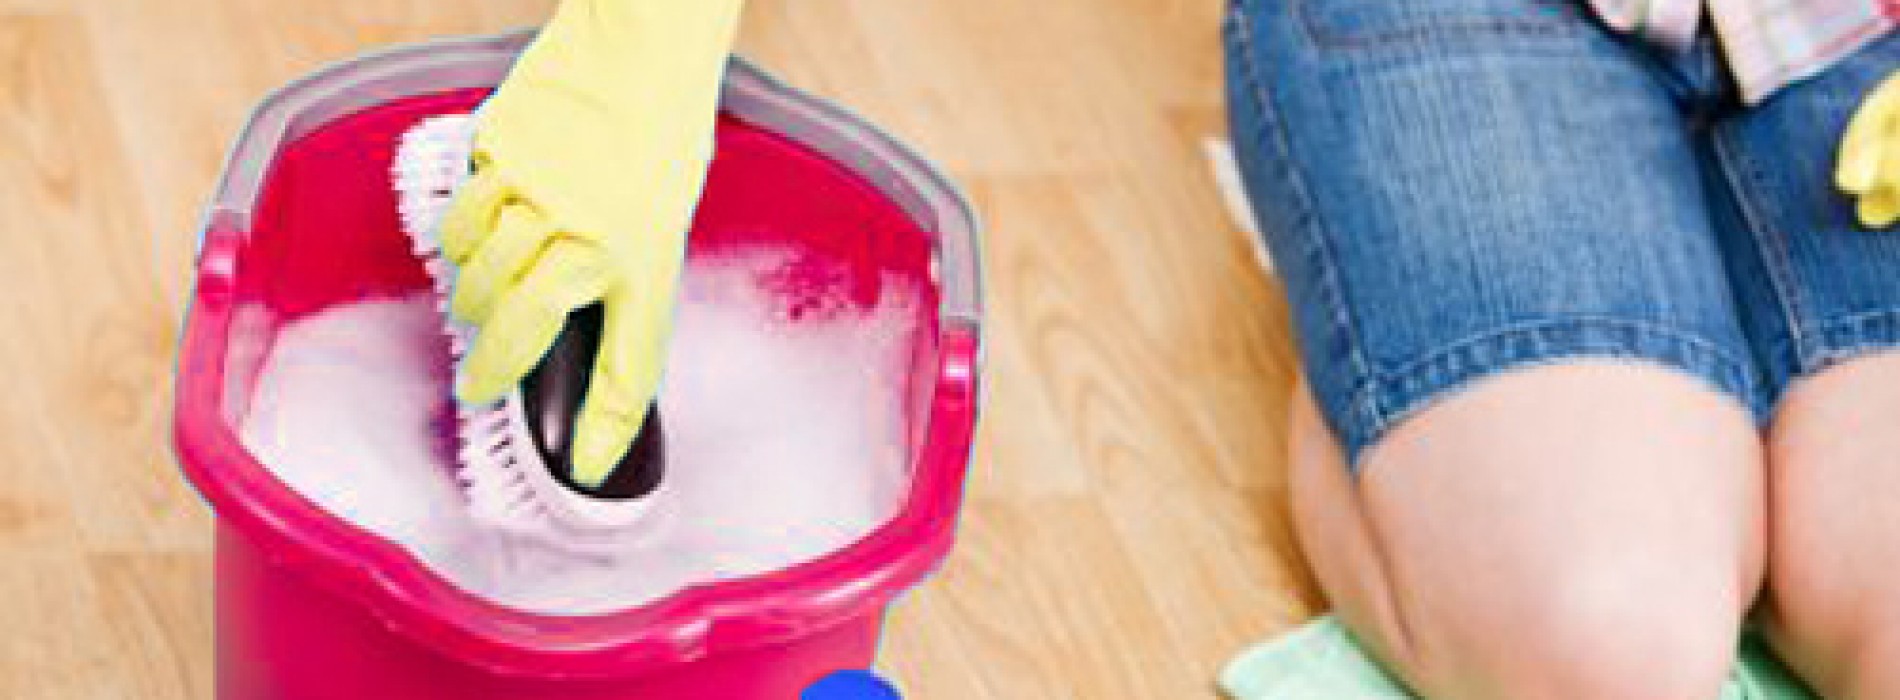 10 Handige schoonmaak tips om jou huishouden sneller schoon te krijgen!